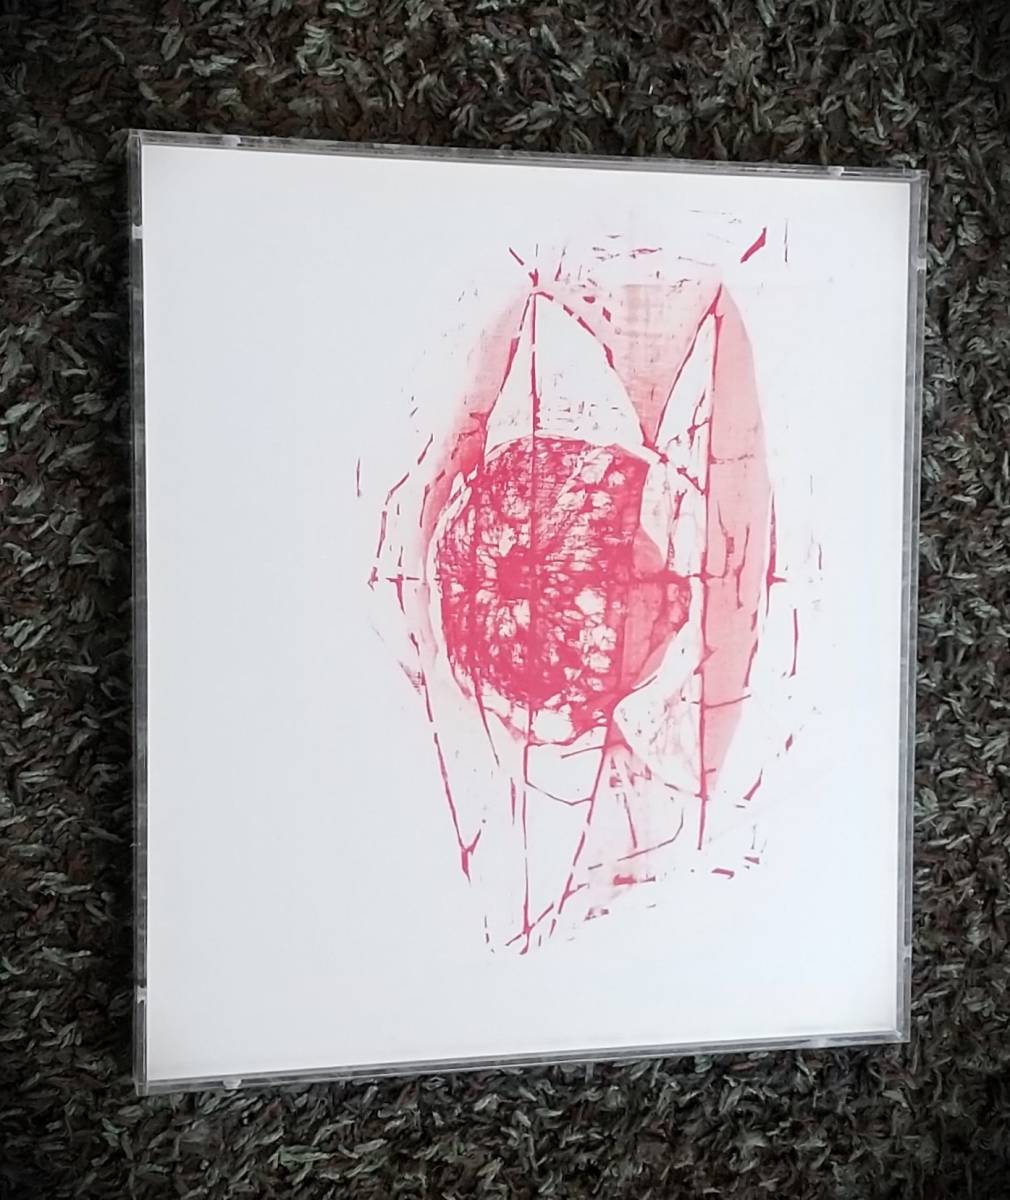 Сейитиро Миида, изображение красного цвета, смешанная техника, произведено в 2007 году, с автографом, единственная в своем роде акриловая рамка [подлинность гарантирована] Мориичиро Миида, рисование, акварель, абстрактная живопись